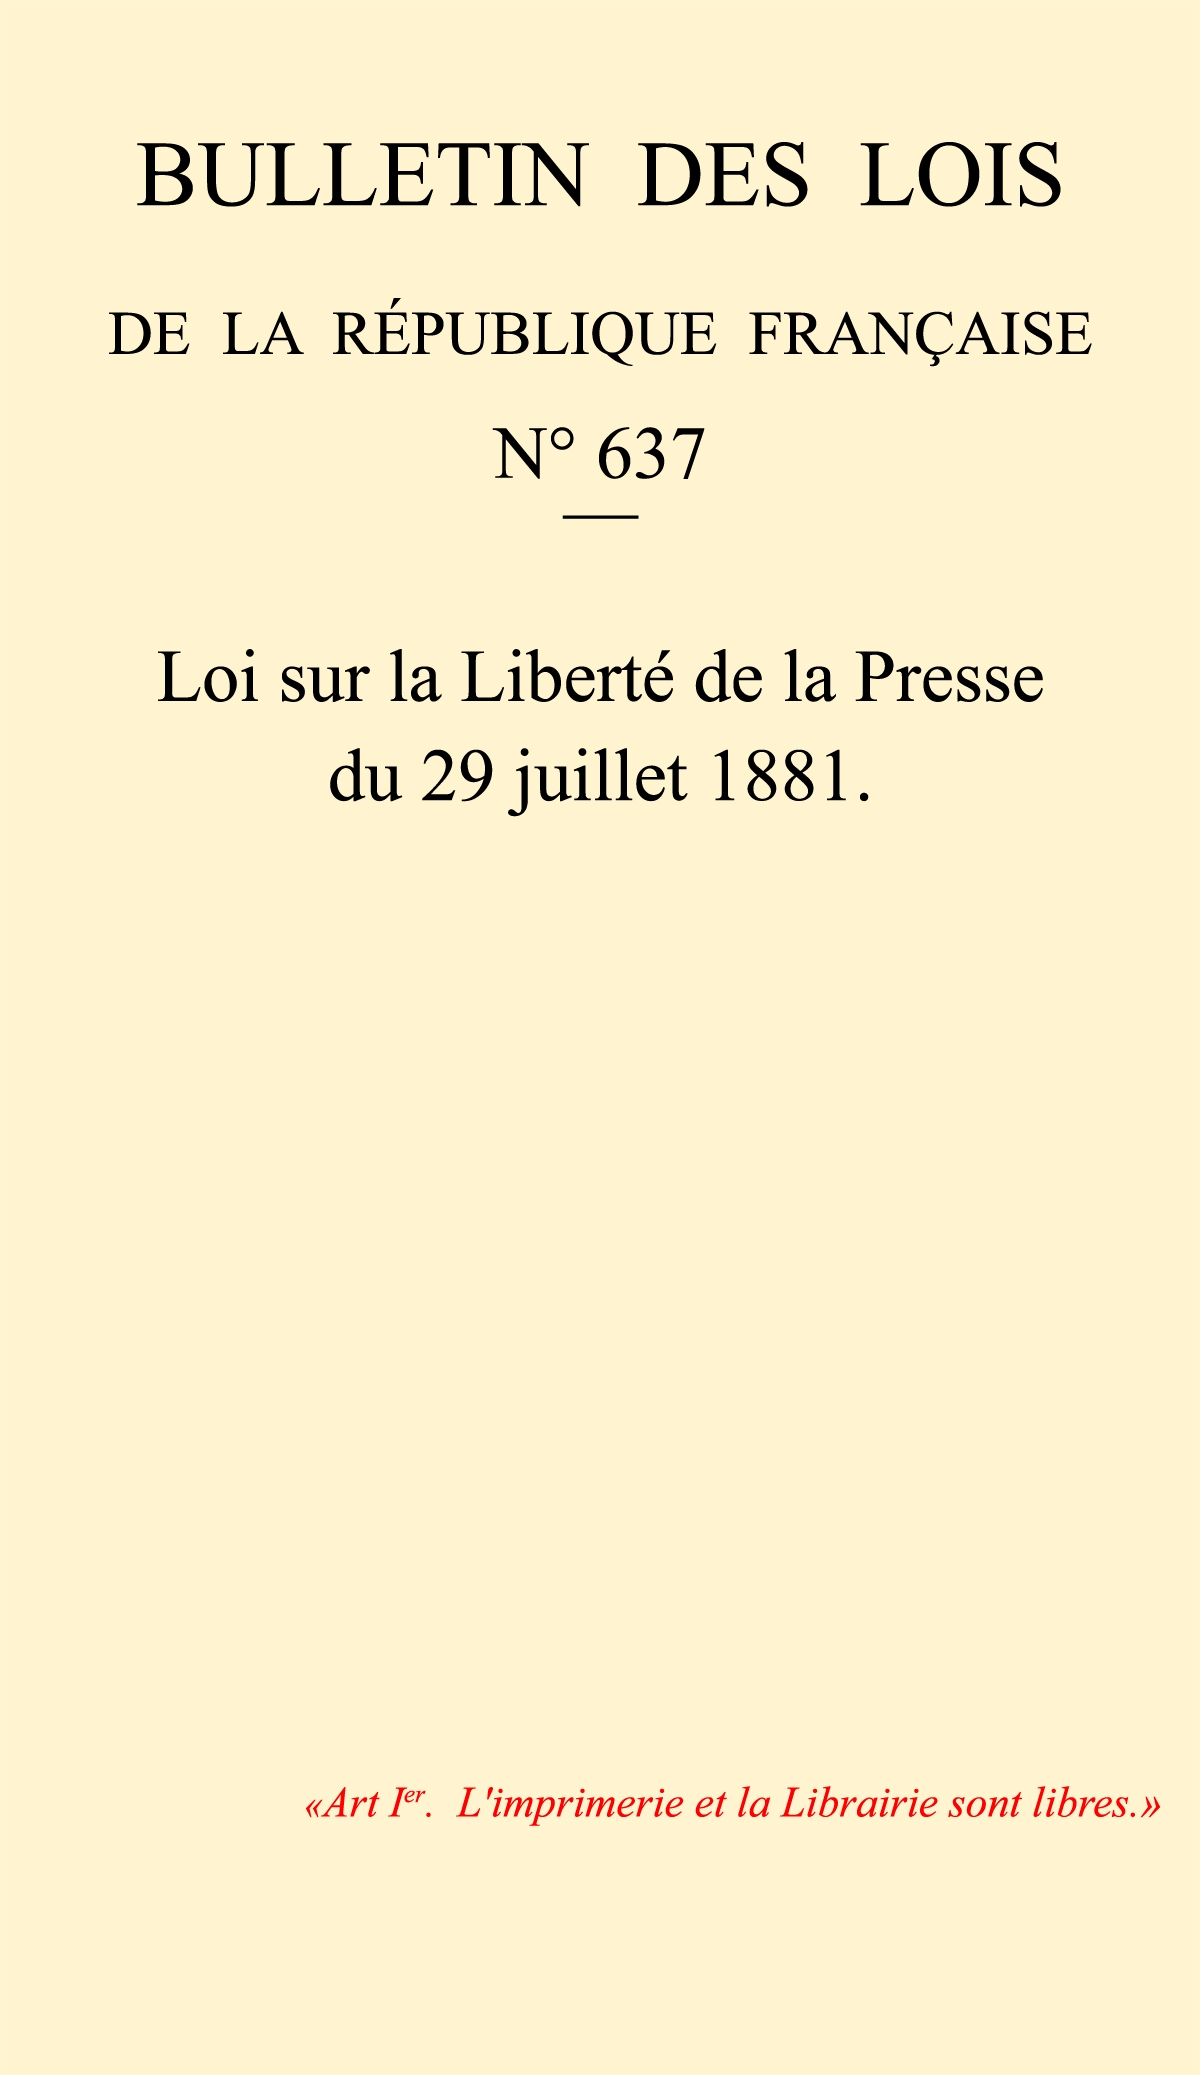 Loi du 29 juillet 1881 sur la Liberté de la Presse